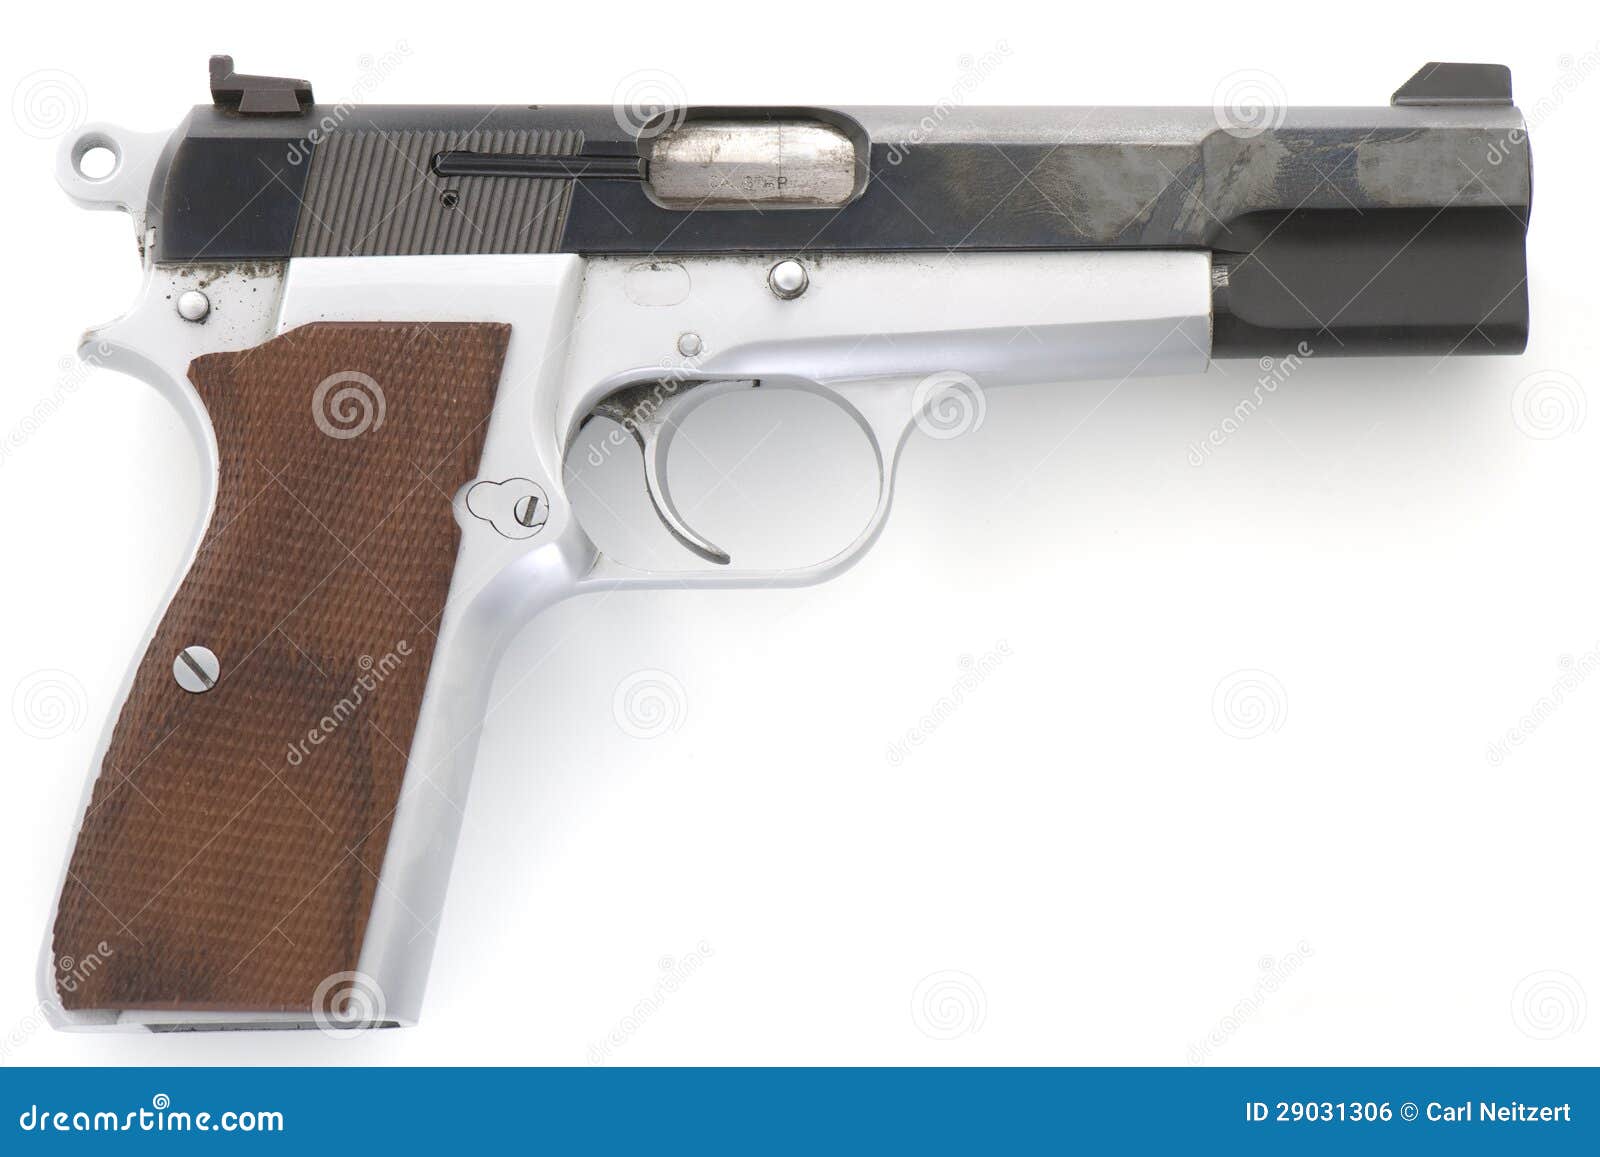 browning hi-power 9mm pistol